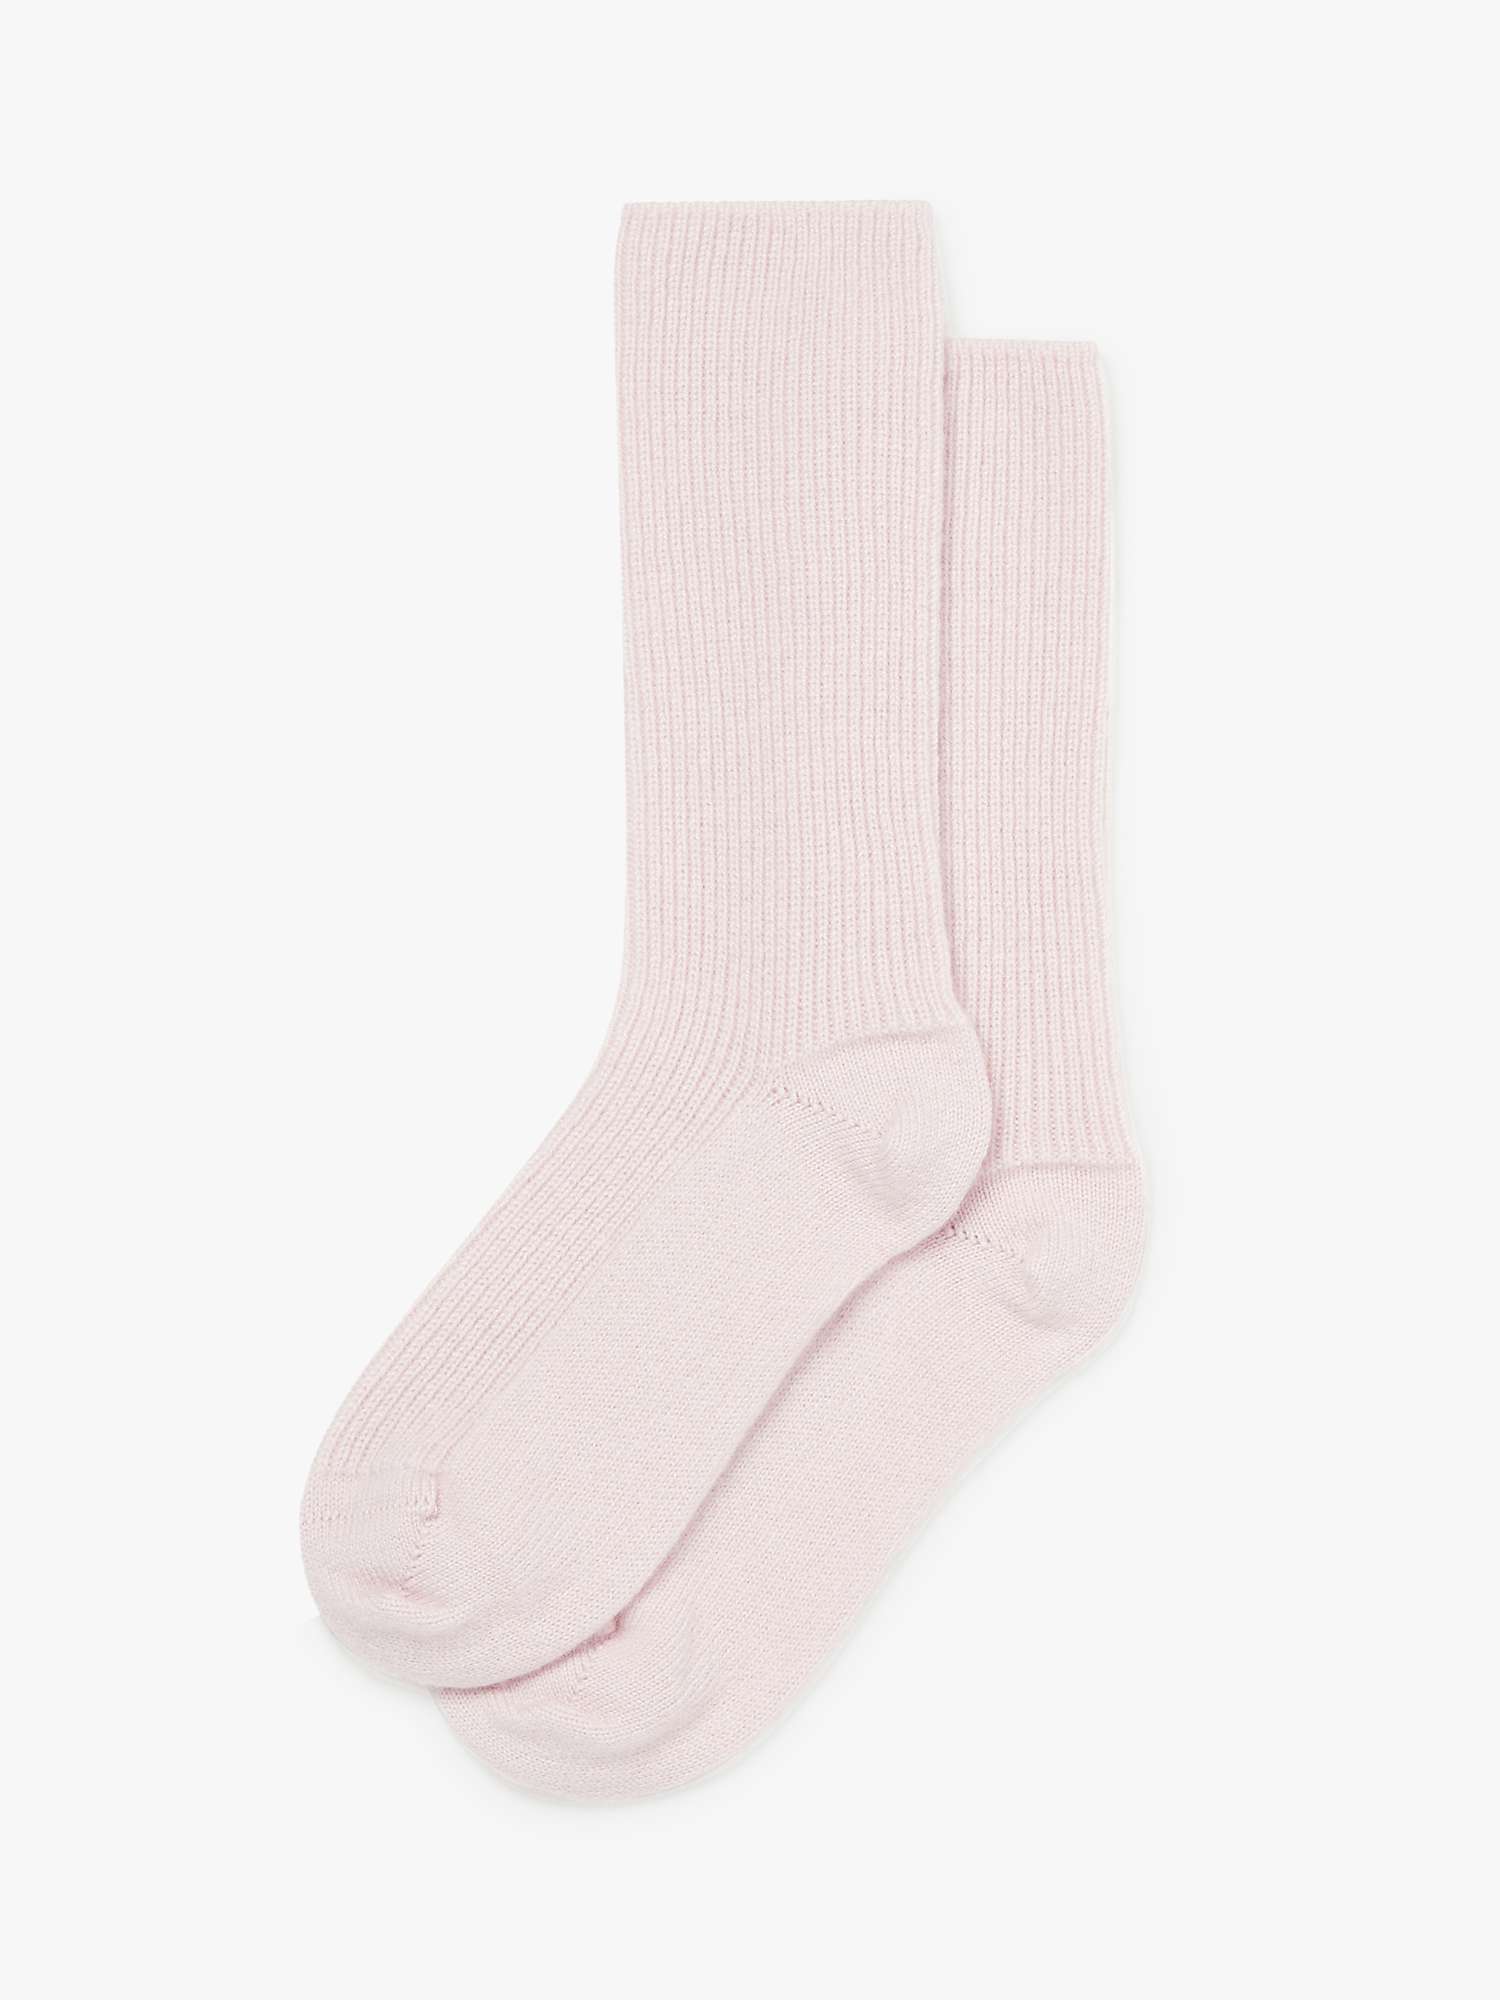 Buy Bedfolk Cashmere Socks Online at johnlewis.com